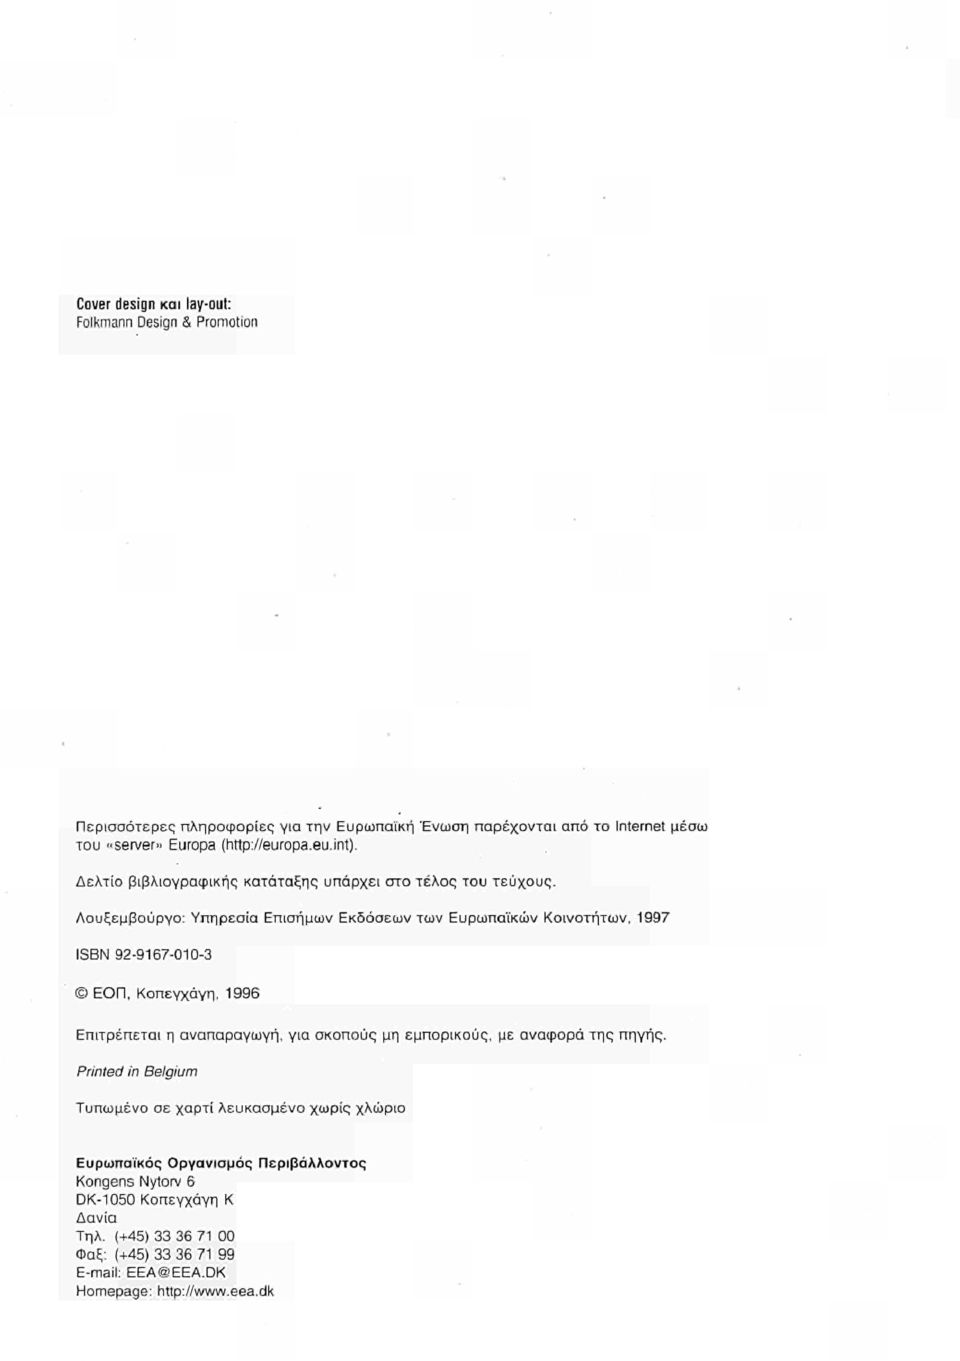 Λουξεμβούργο: Υπηρεσία Επισήμων Εκδόσεων των Ευρωπαϊκών Κοινοτήτων, 1997 ISBN 92-9167-010-3 ΕΟΠ, Κοπεγχάγη, 1996 Επιτρέπεται η αναπαραγωγή, για σκοπούς μη